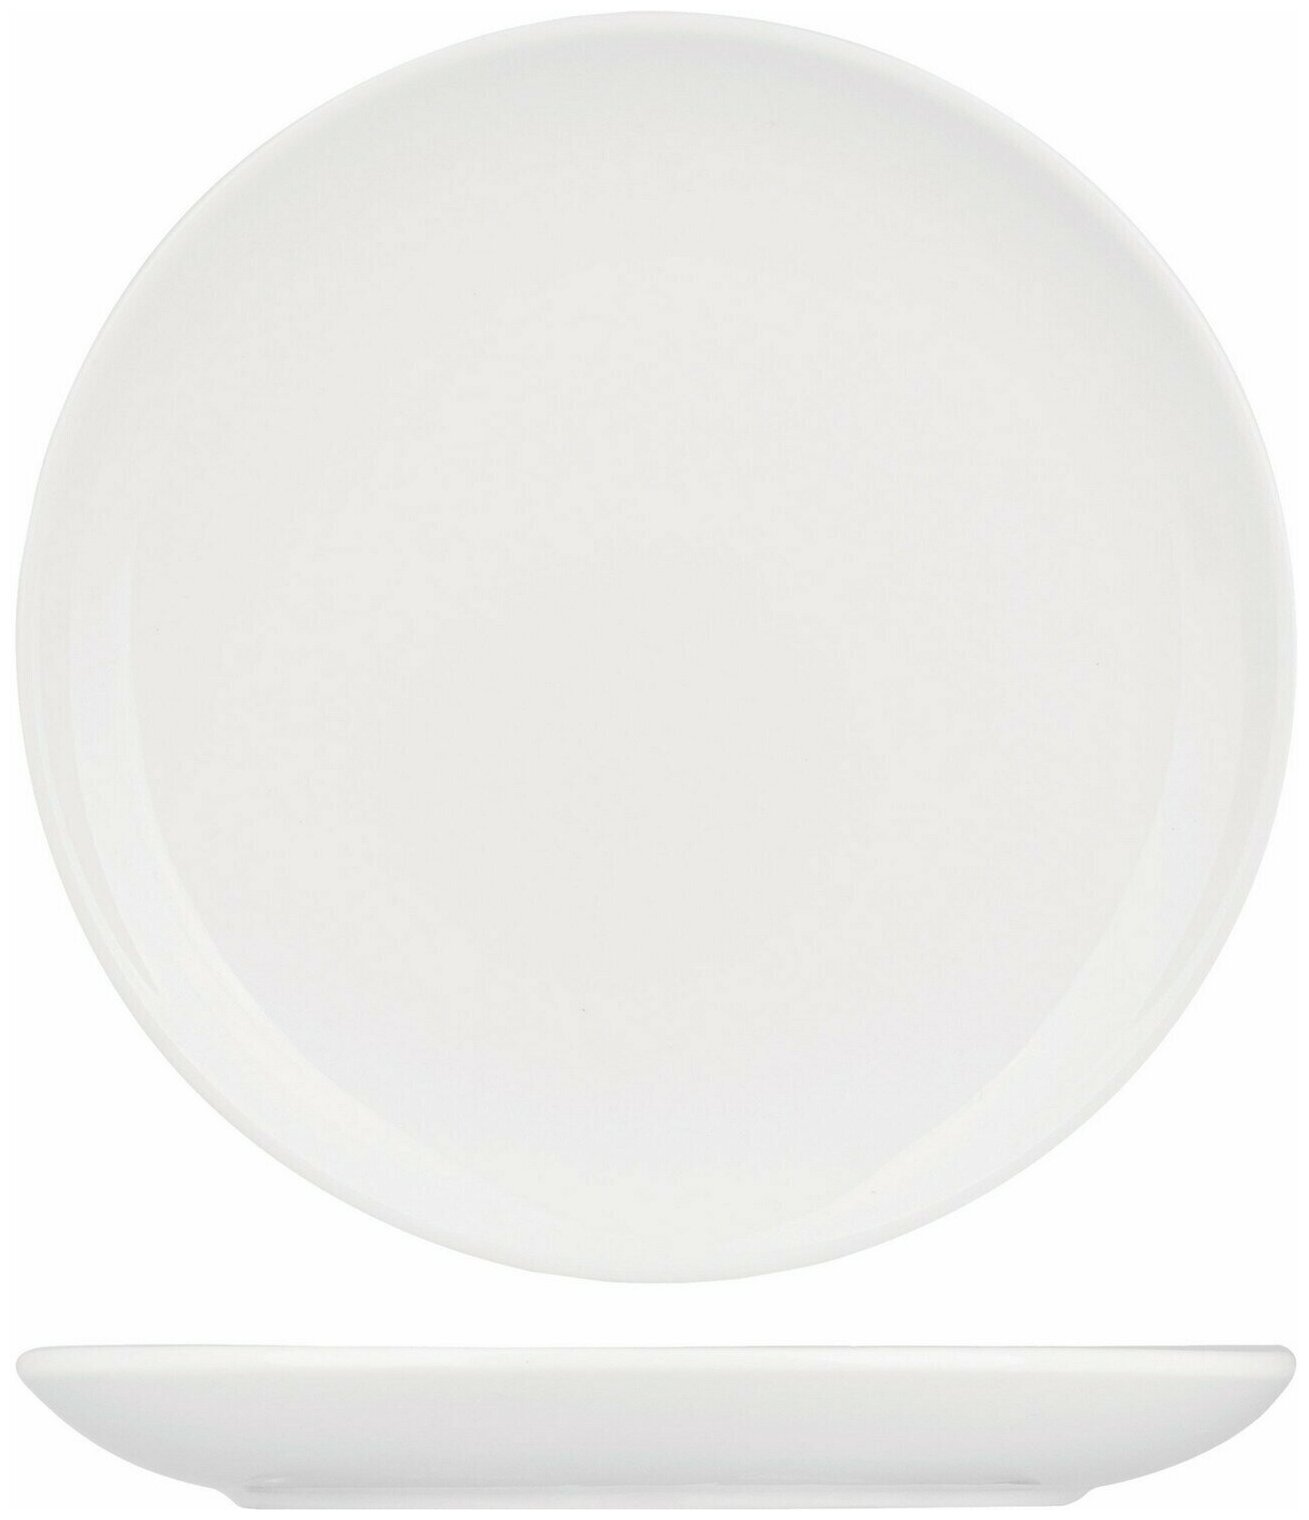 Тарелка Kunstwerk мелкая без борта 180х180х17мм, фарфор, белый, 1 шт.